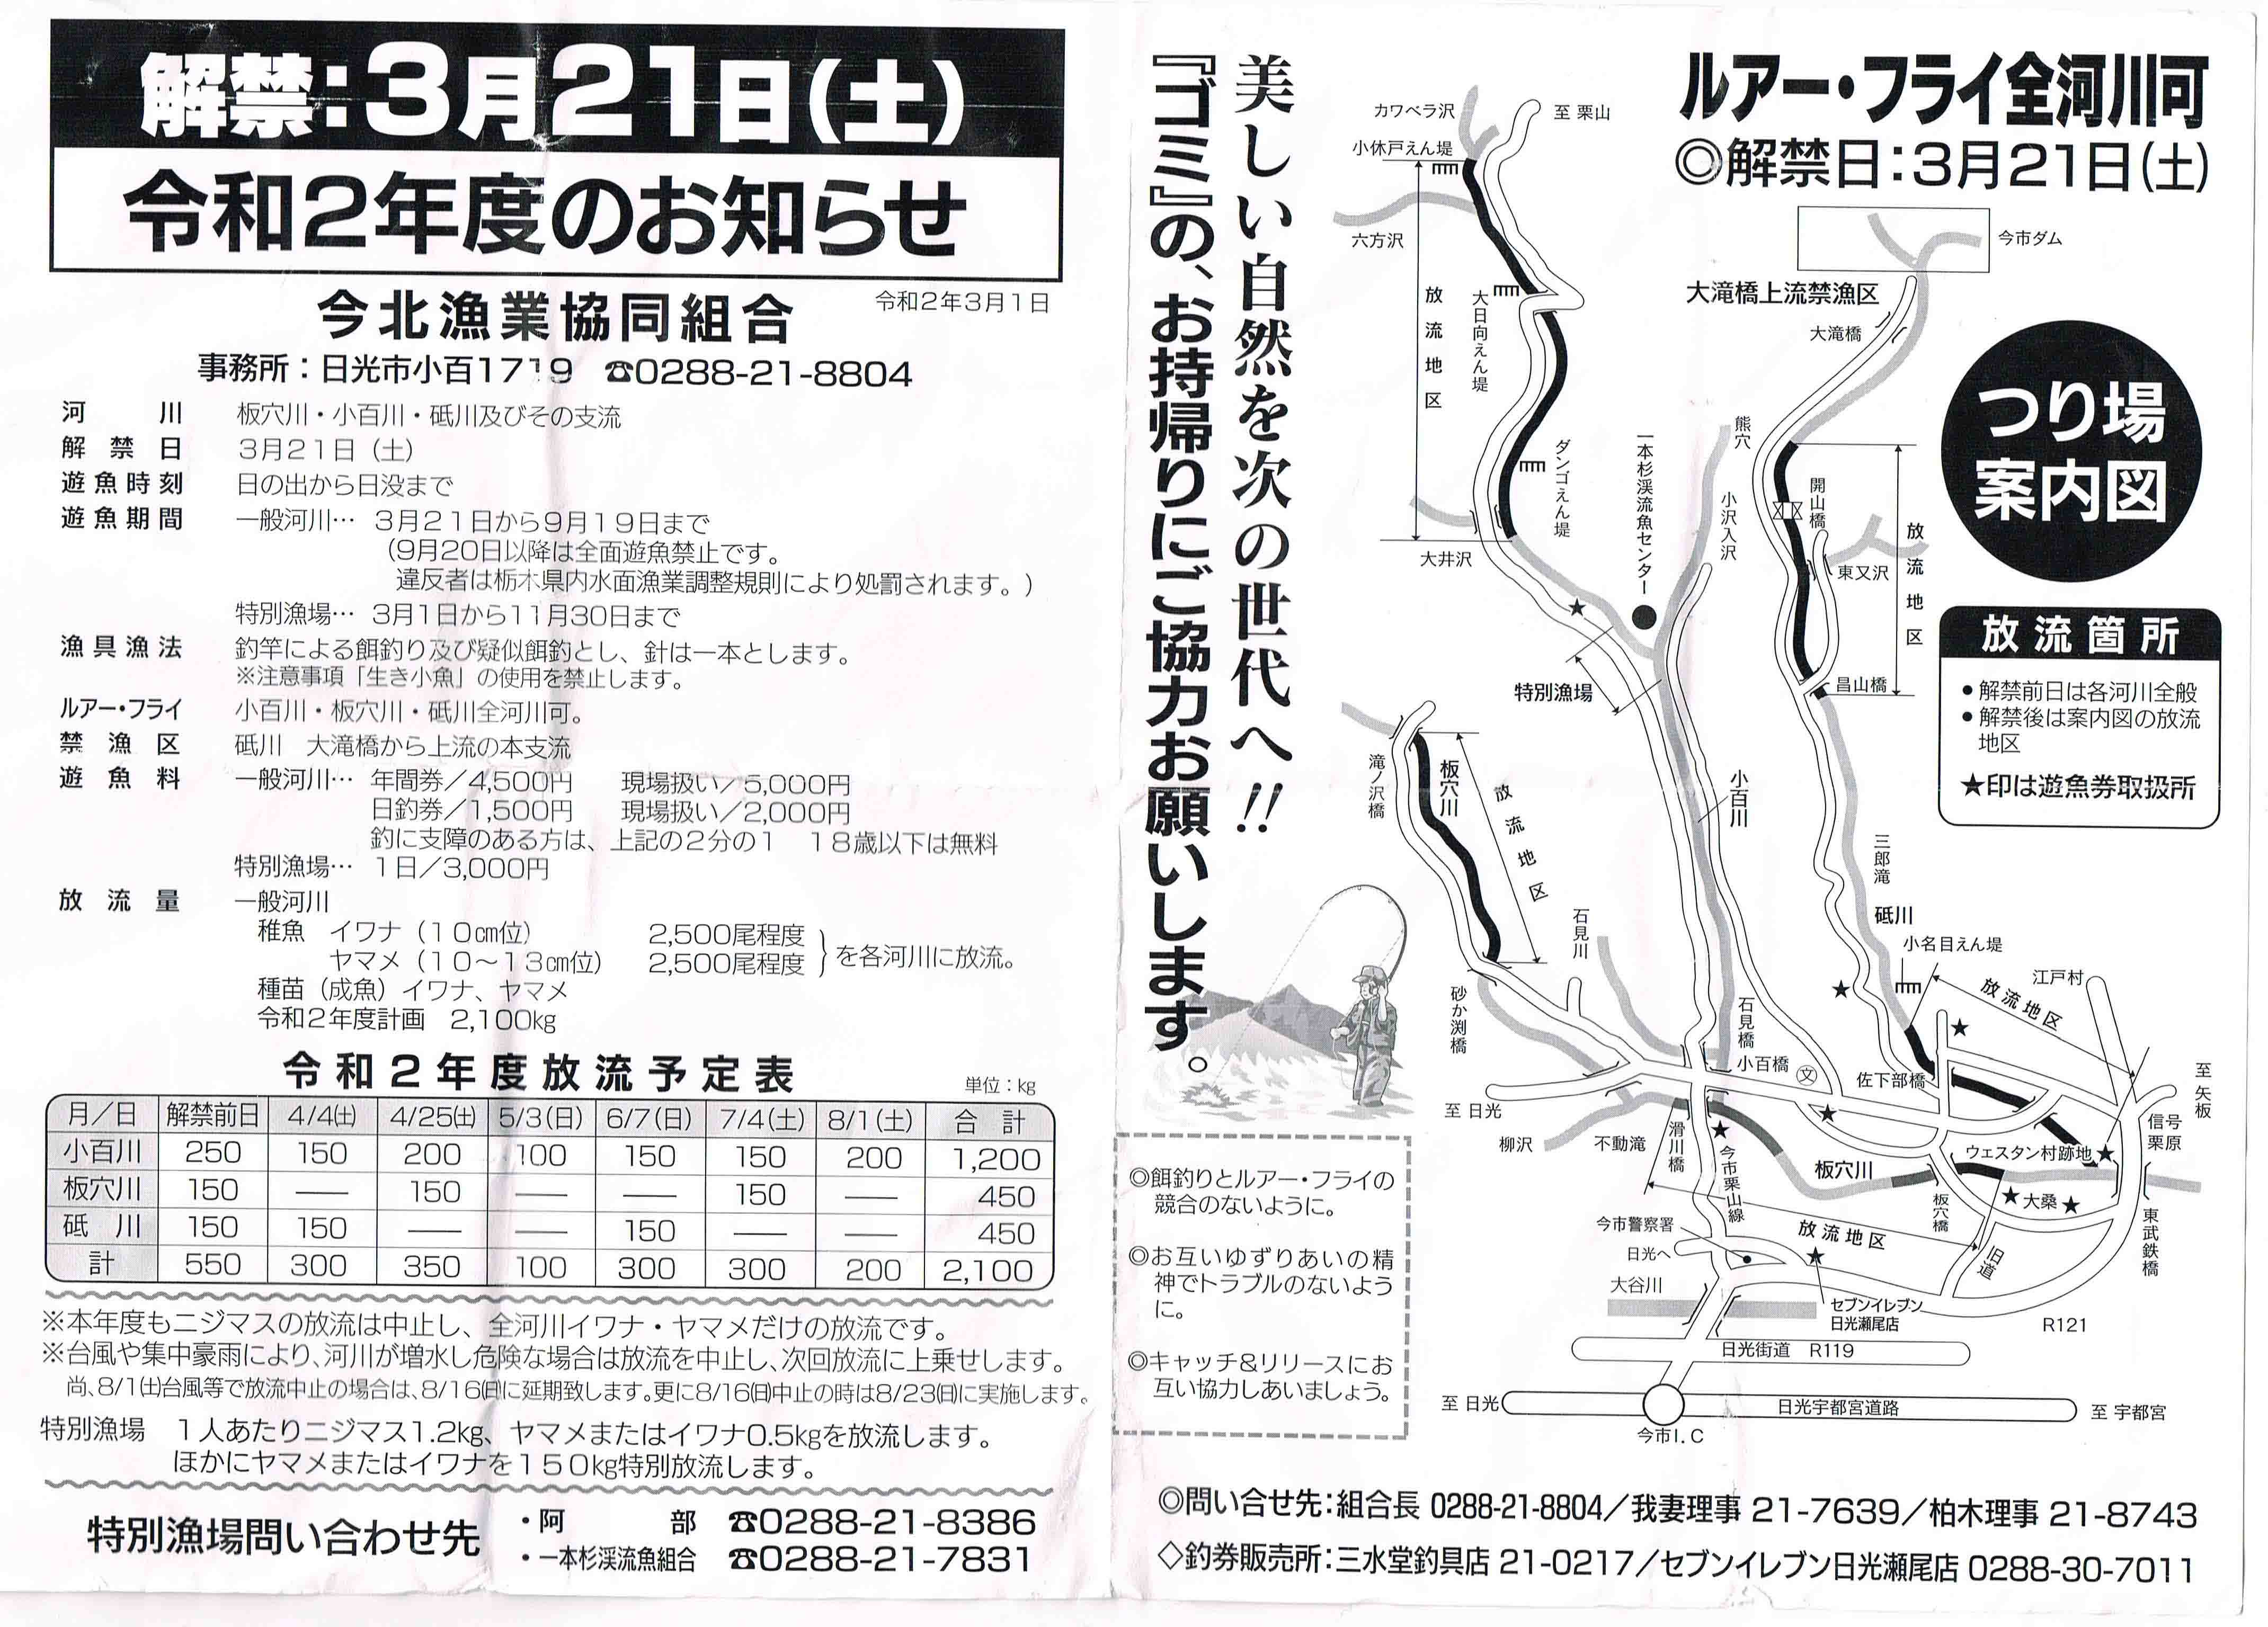 渓流釣り場紹介 爽快感抜群の小百川 日光市 は超おすすめです 第22弾 釣りとバイクが趣味なんだ